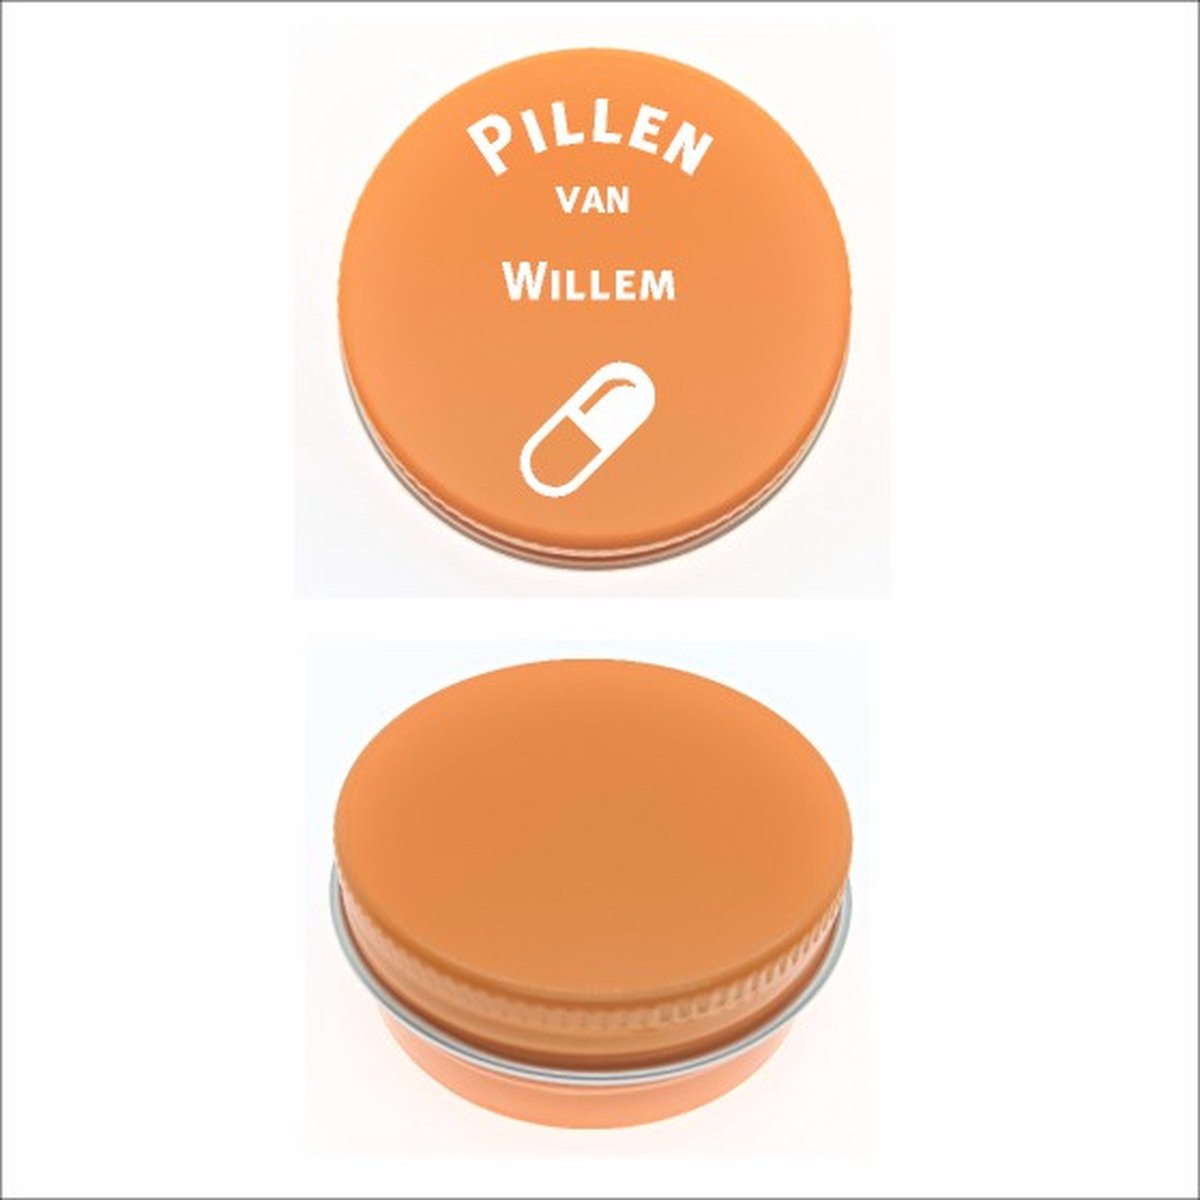 Pillen Blikje Met Naam Gravering - Willem